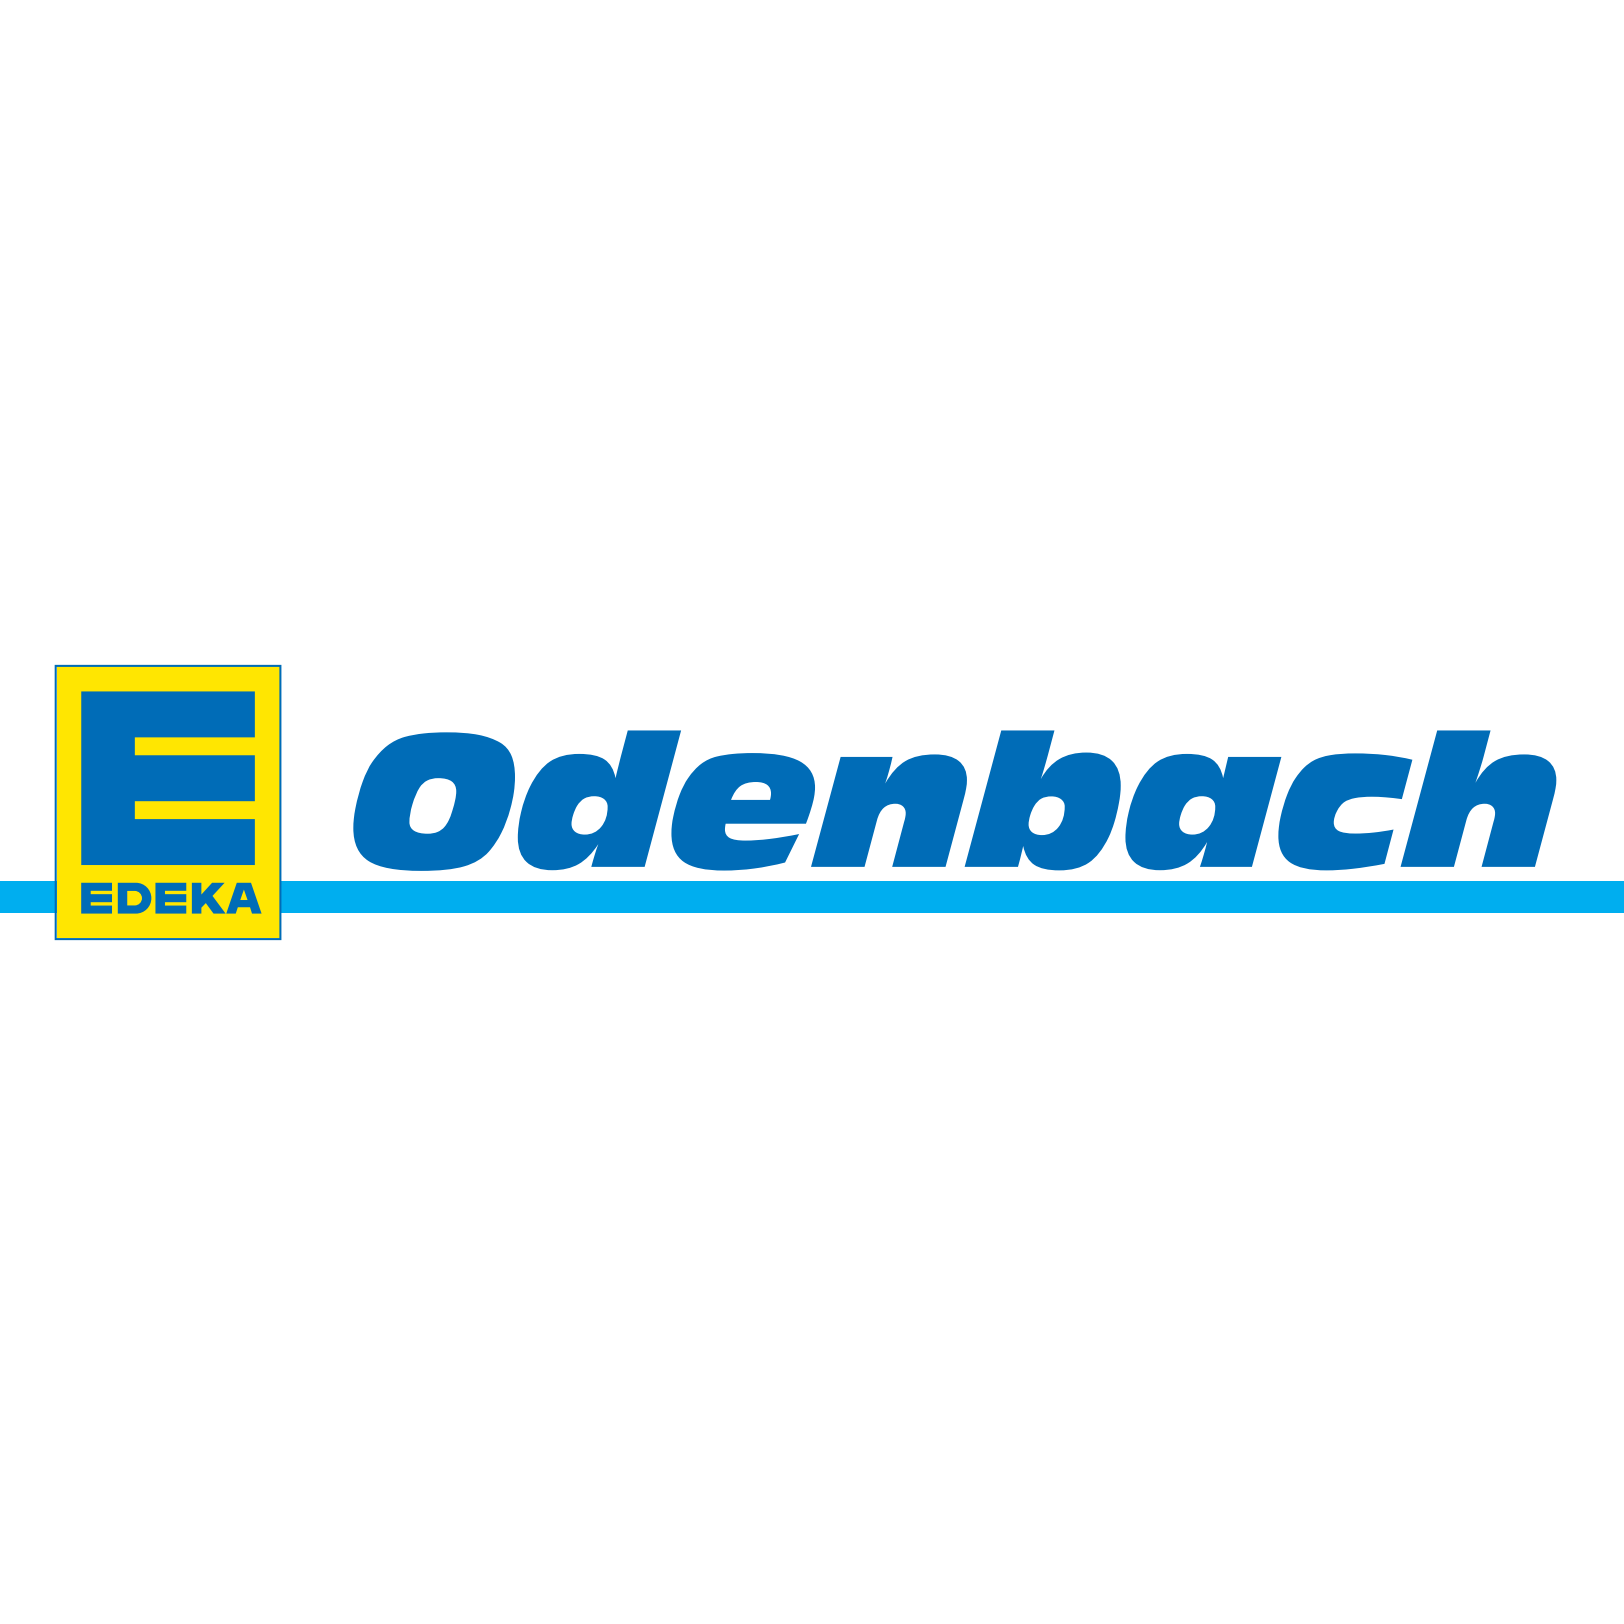 Logo Edeka Odenbach in Weyarn